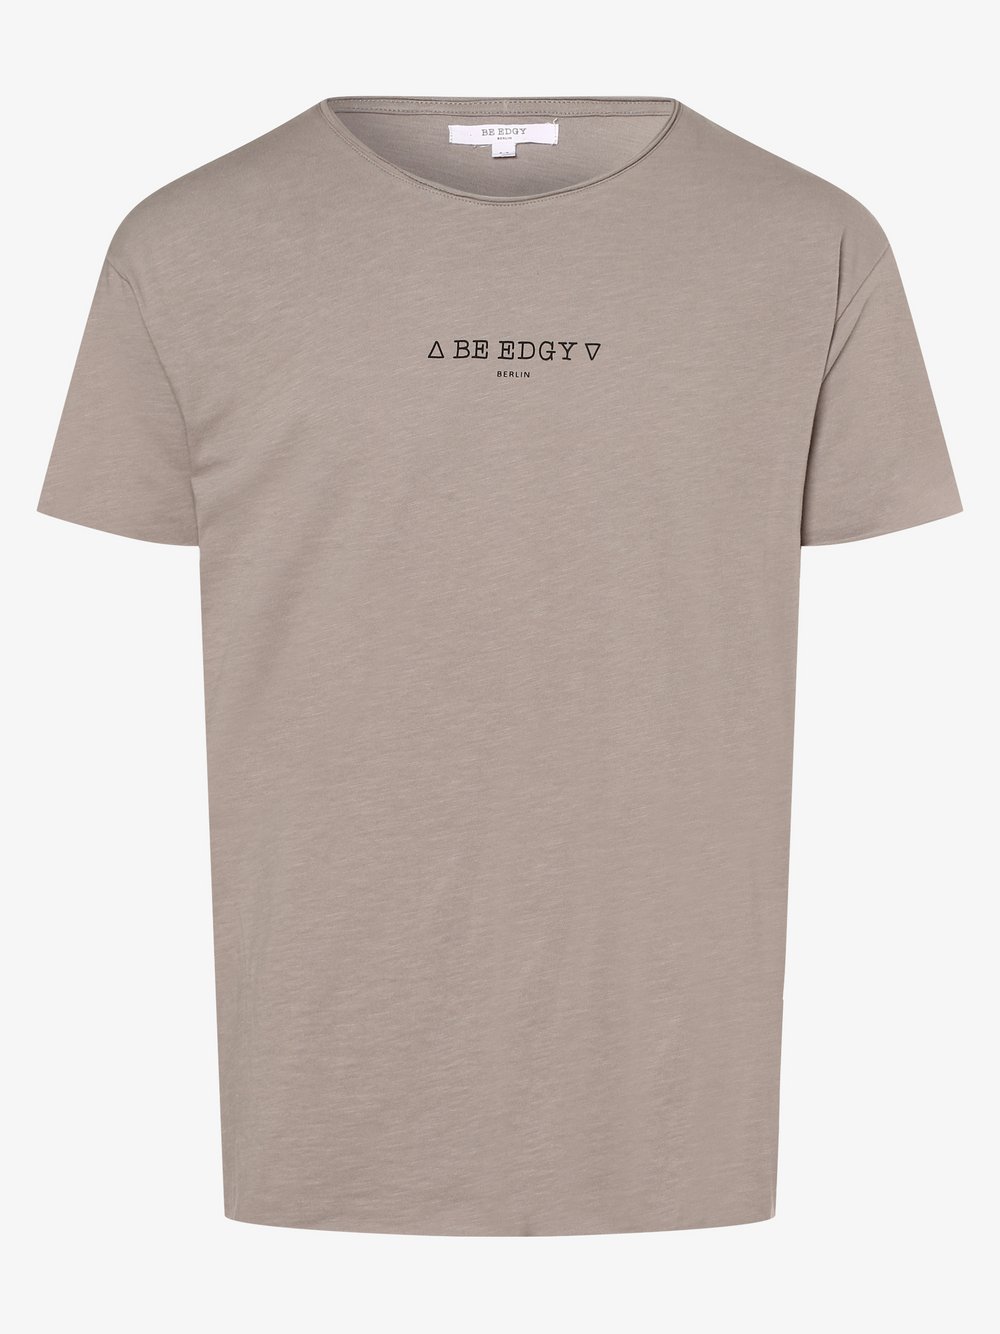 BE EDGY - T-shirt męski – BEdustin, szary